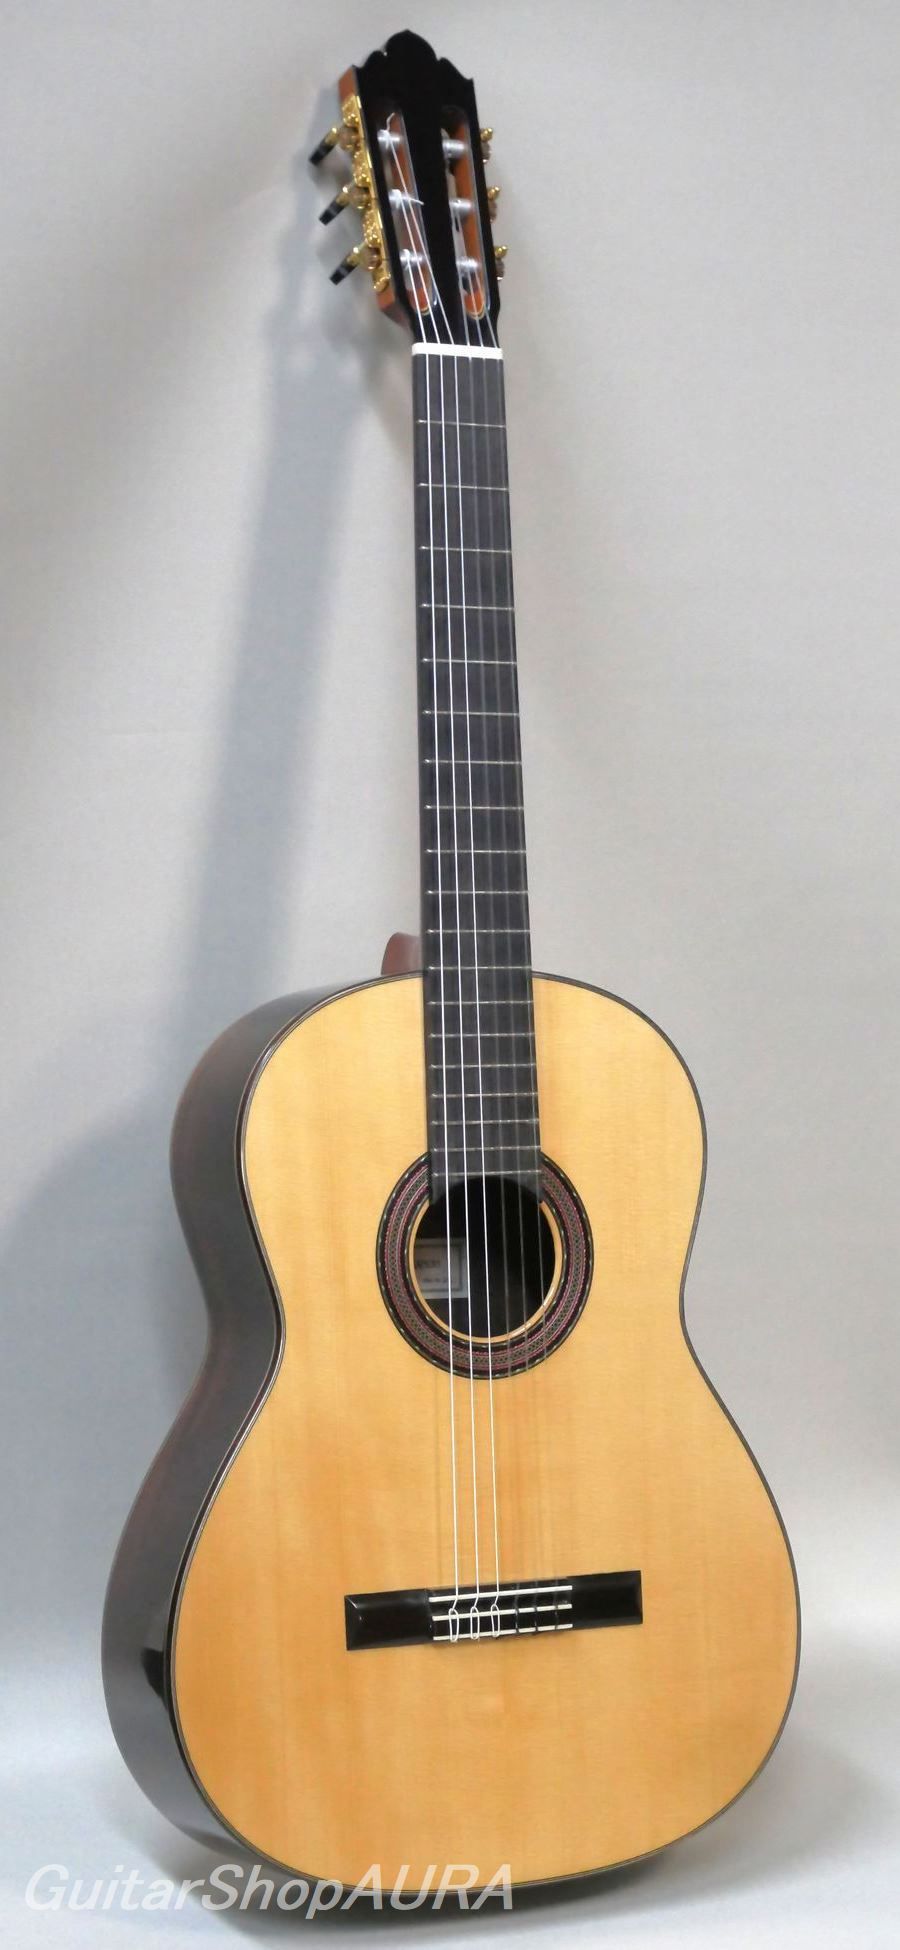 本店は クラシックギター フランシスコ モデル104 エステべ アコースティックギター